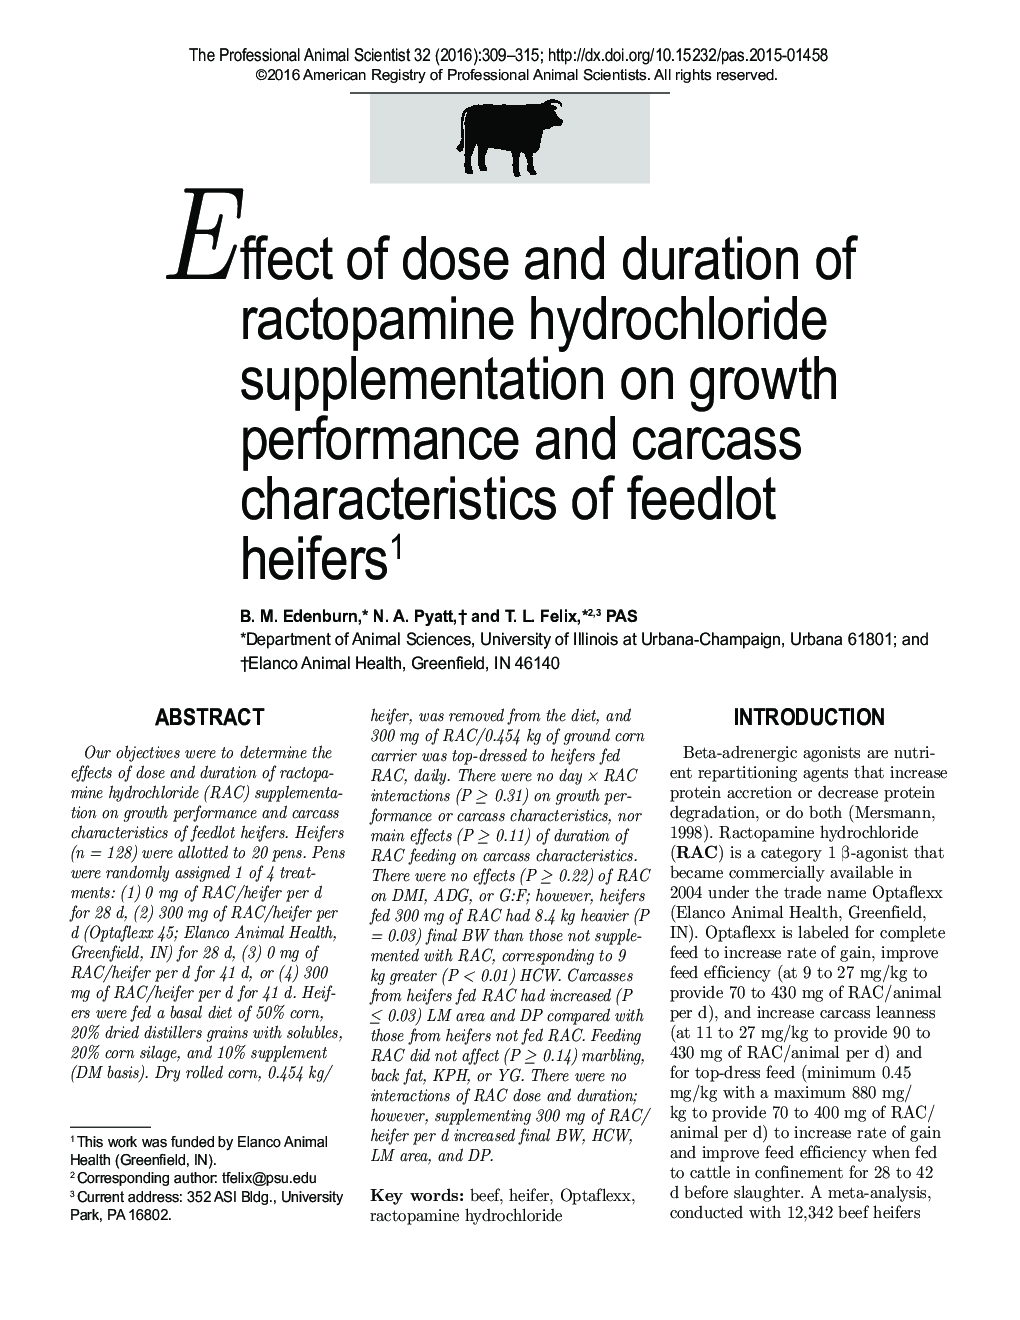 اثر دوز و مدت زمان مصرف مکمل کلرید رتوپامین بر عملکرد رشد و عملکرد لاشه تلیسه های خوراکی 1 